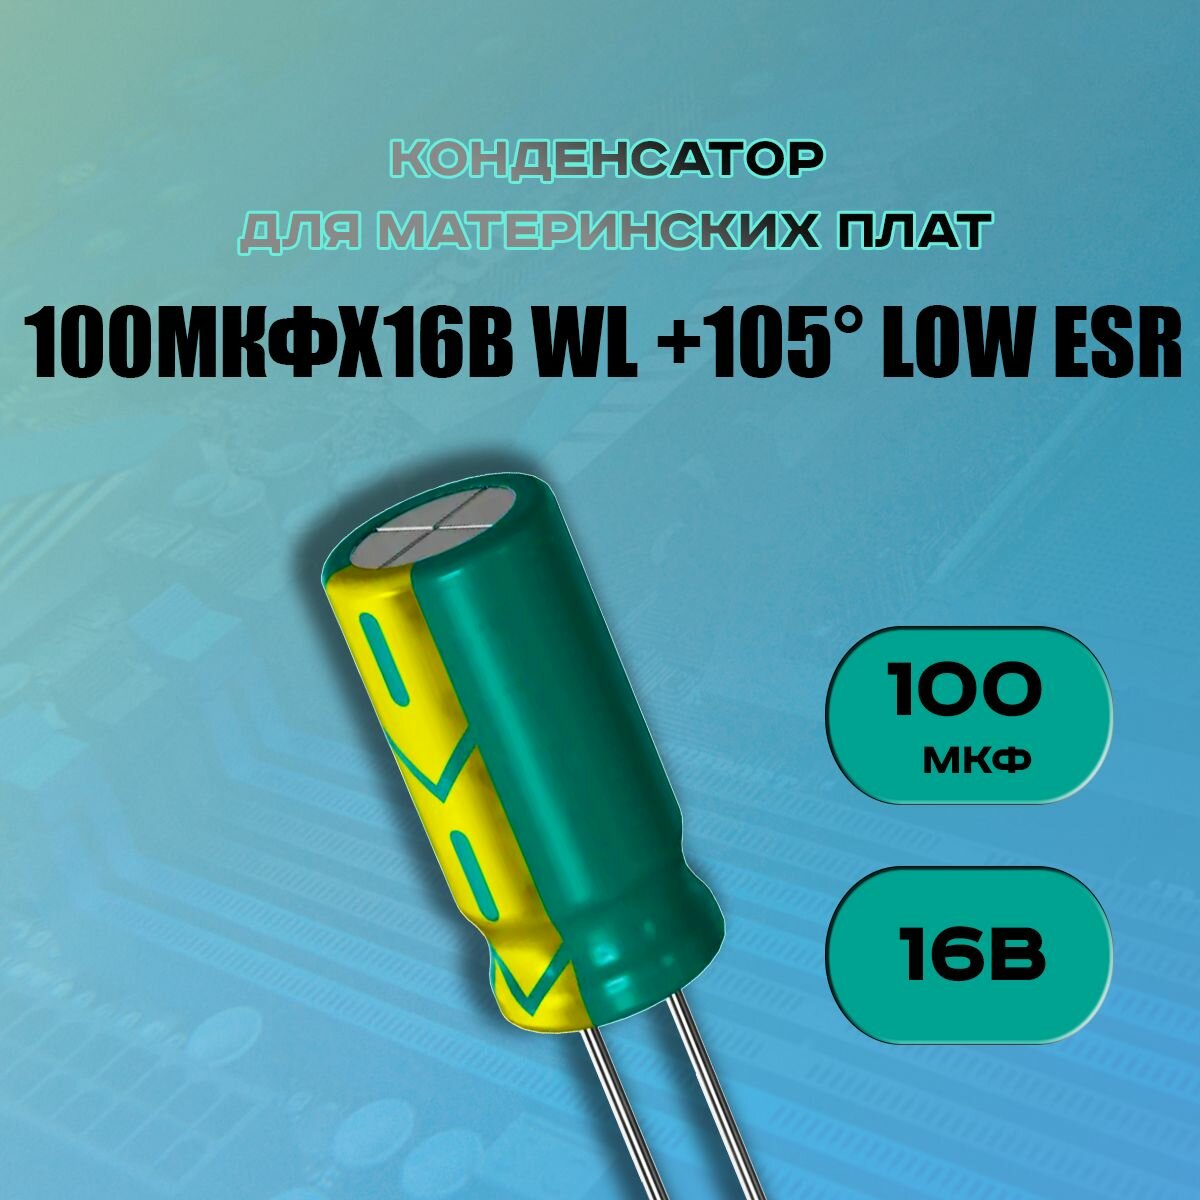 Конденсатор для материнской платы 100 микрофарат 16 Вольт (100uf 16V WL +105 LOW ESR) - 1 шт.